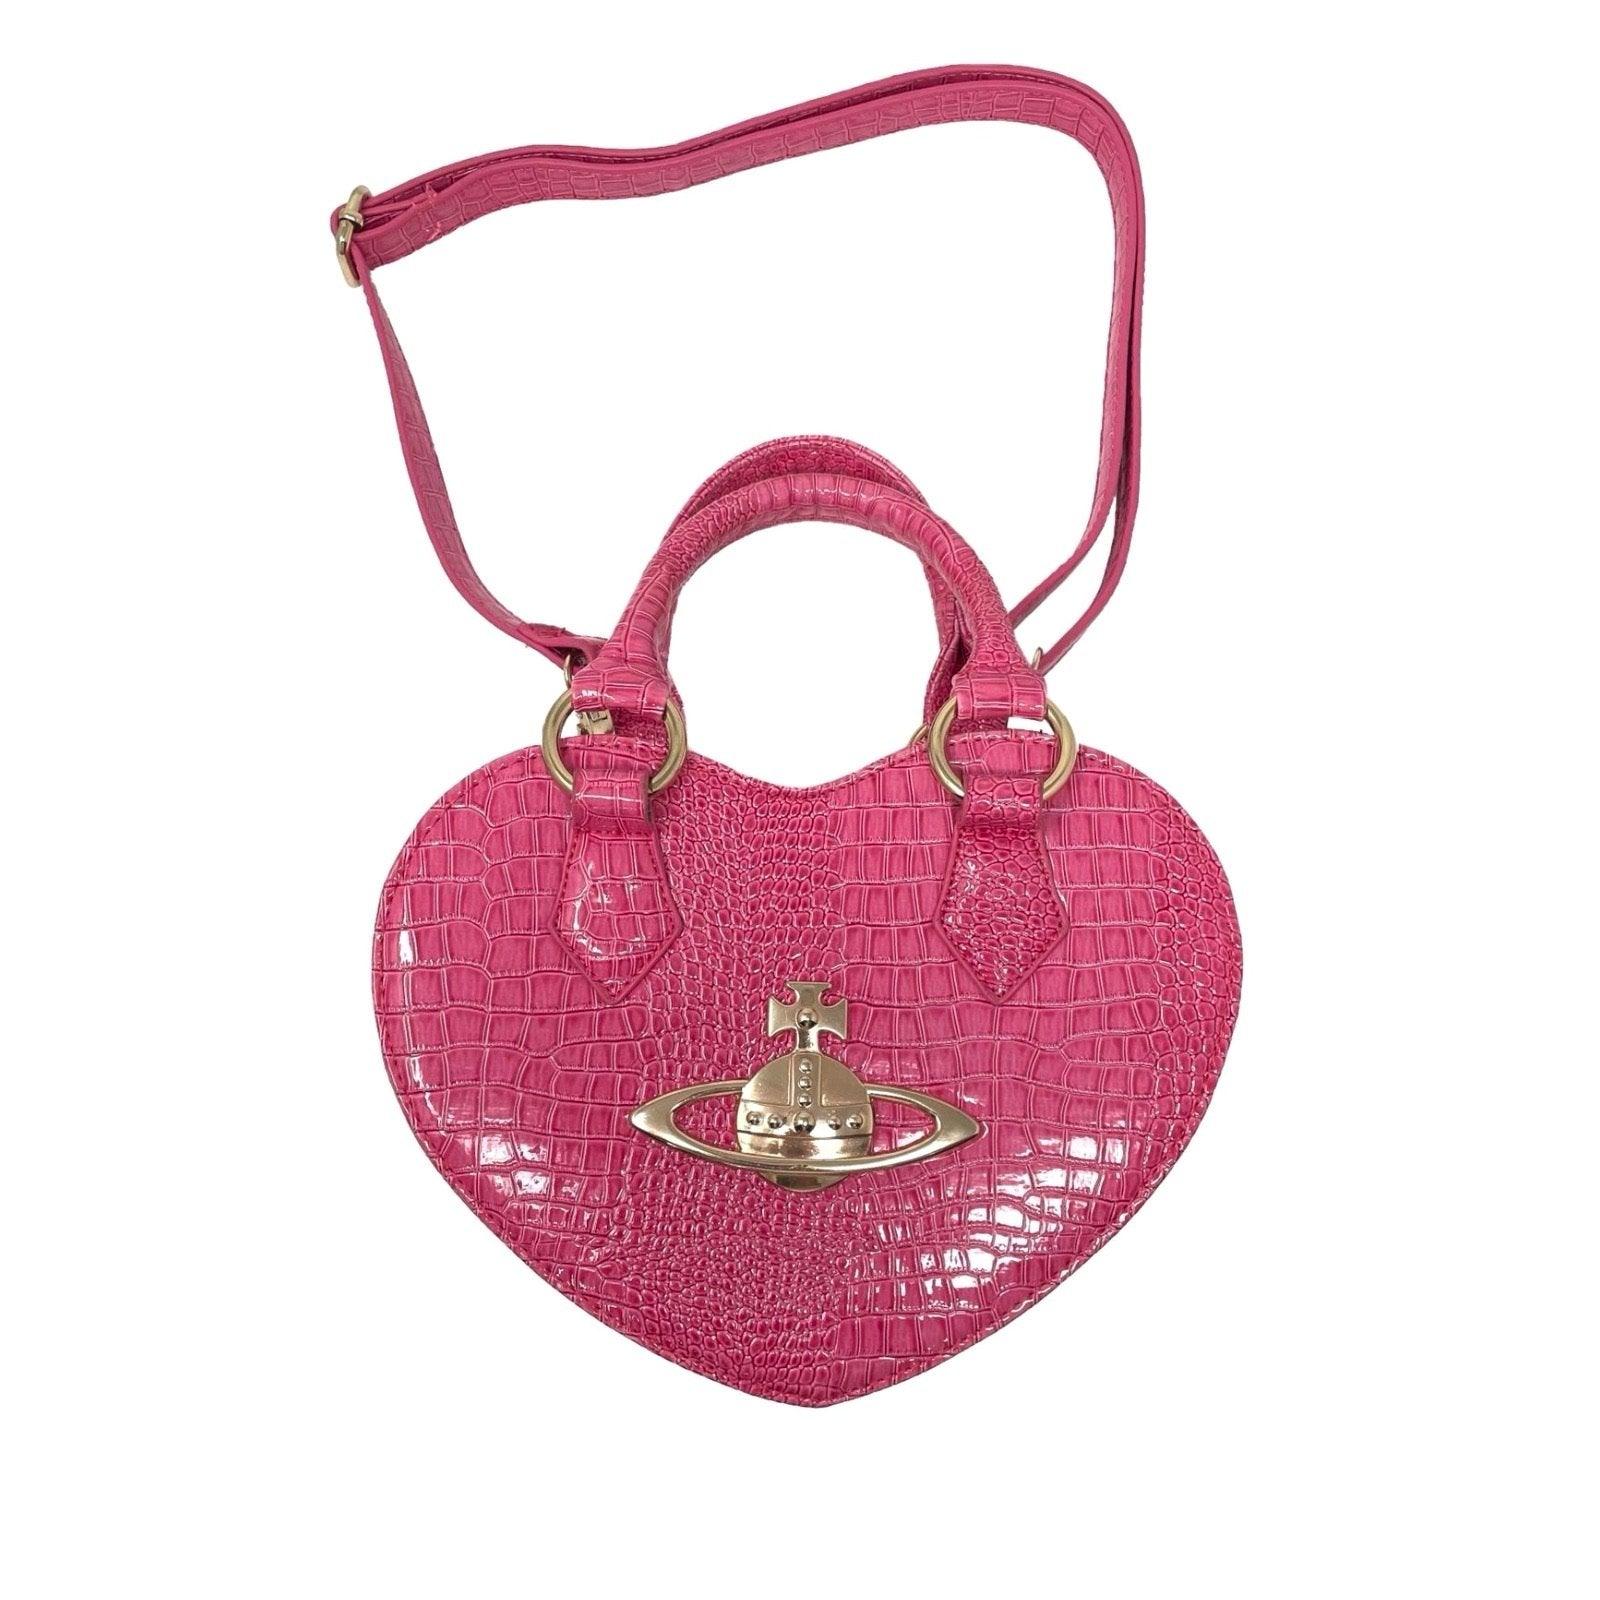 Vivienne Westwood Heart Bag – Come Up Vintage